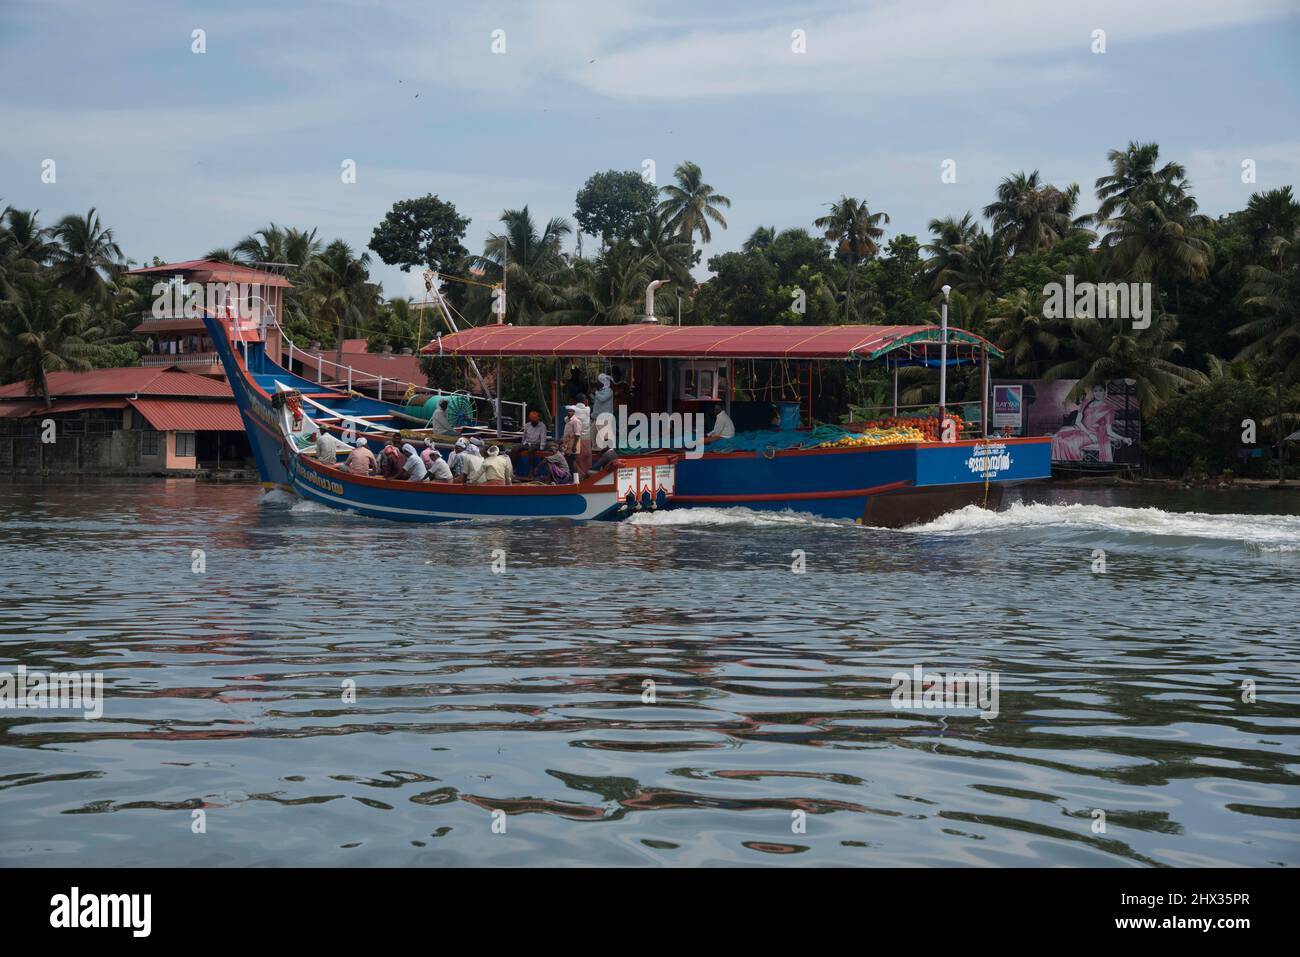 Un bateau à riz traditionnel ou kettuvallam, les eaux de Kerala, en Inde, les kettuvallams étaient traditionnellement utilisés comme barges à céréales, pour transporter le riz harv Banque D'Images